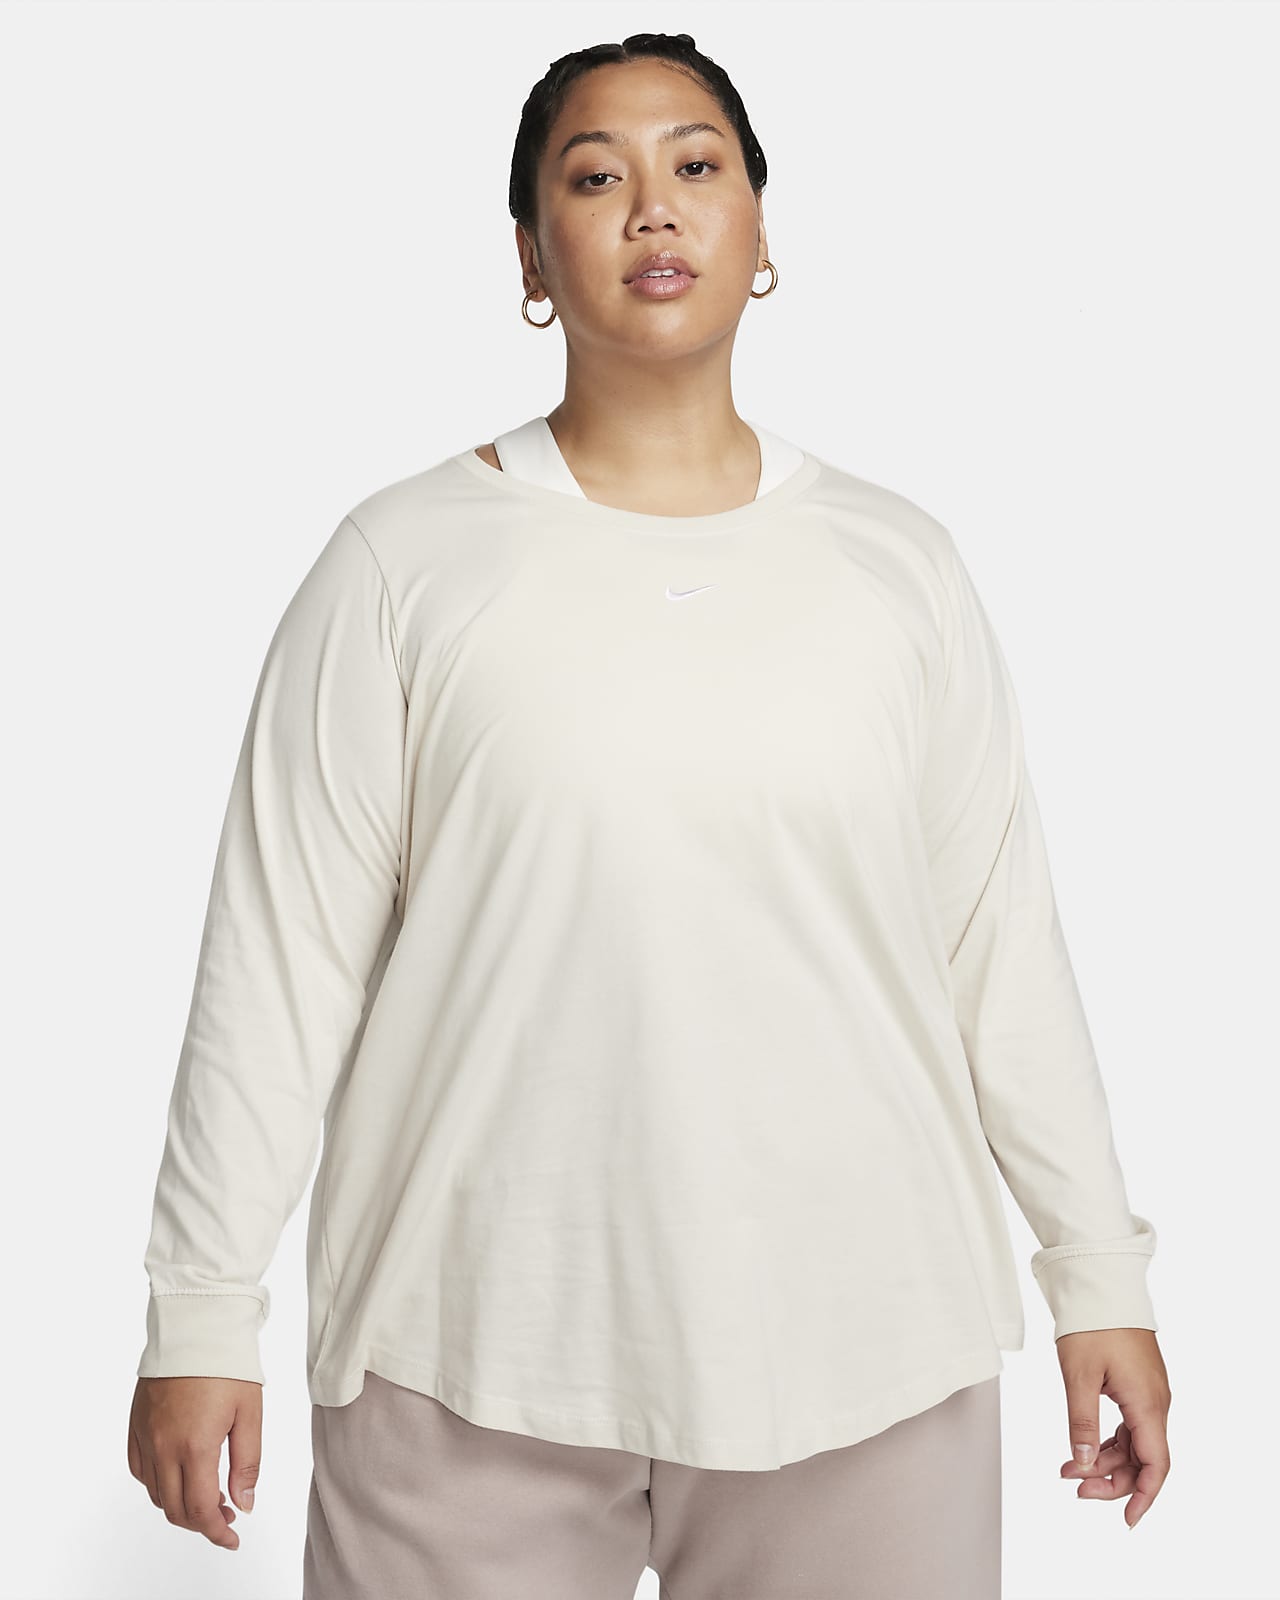 Nike Sportswear Women's Long-Sleeve (Plus Size).